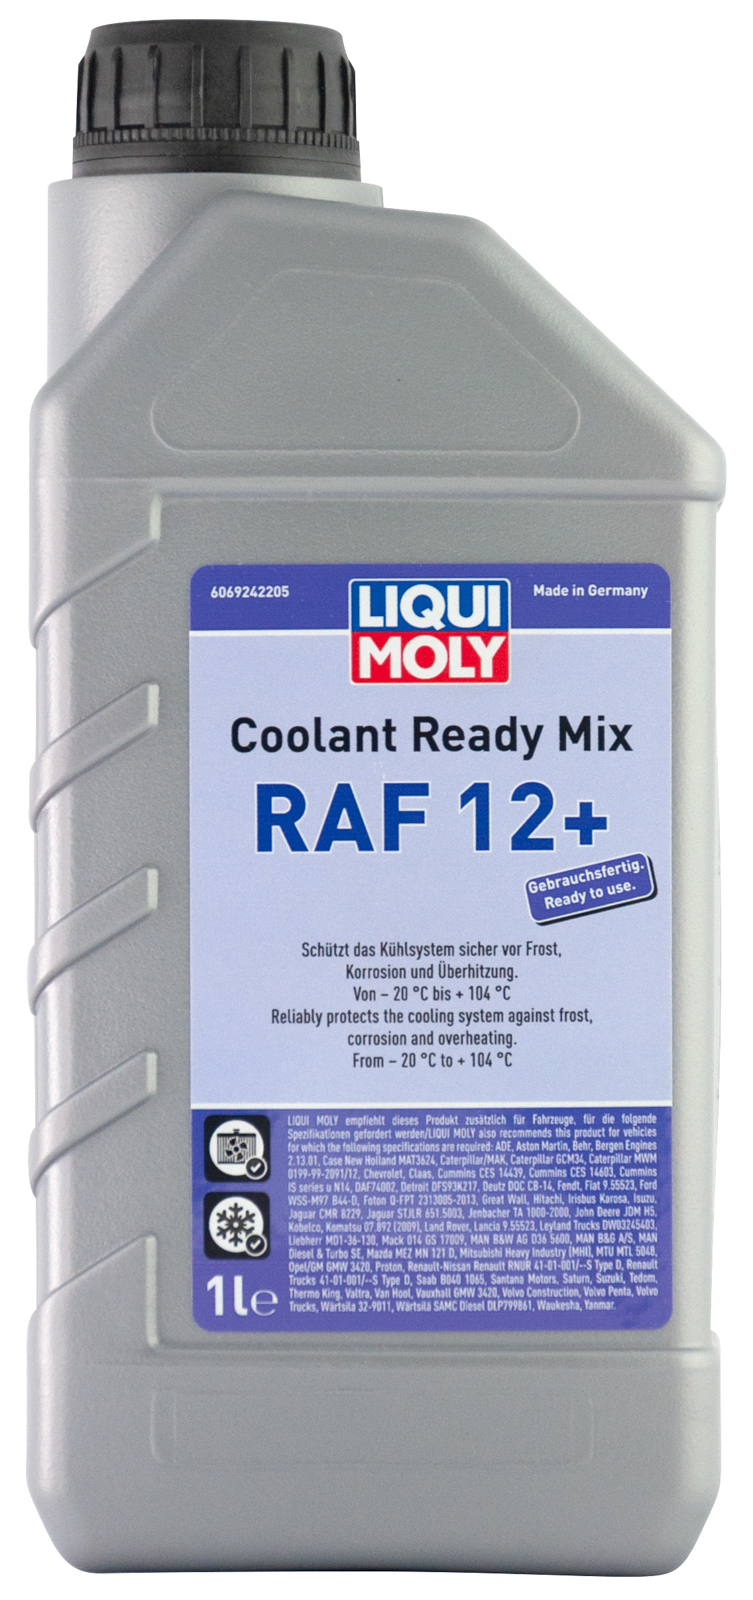  Coolant Ready Mix RAF12+ 1 л. 6924 LIQUI MOLY -  по .